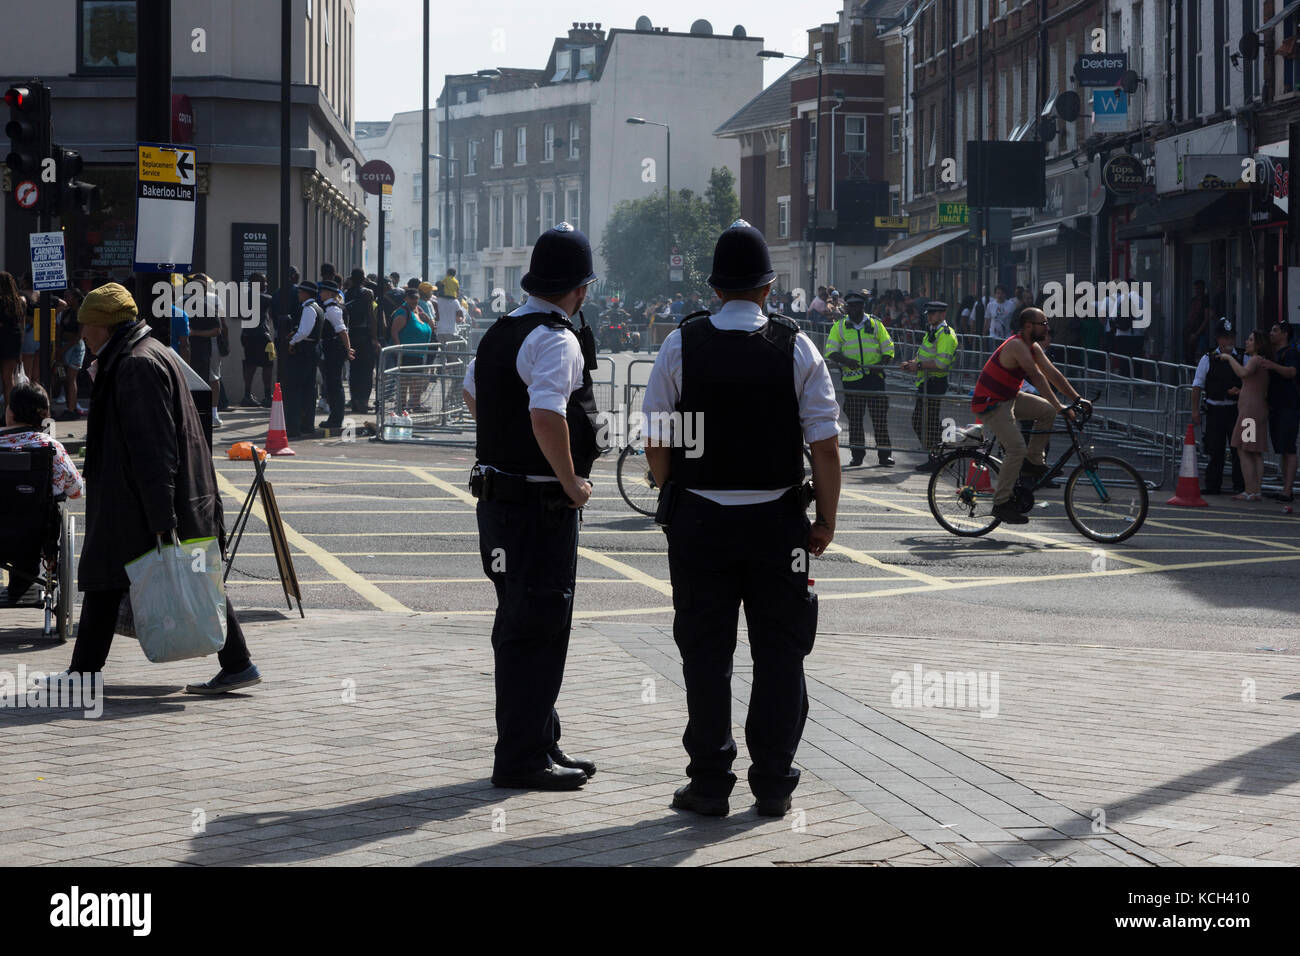 Policiers regardant des carnavaliers à Notting Hill Carnival, London, England, UK Banque D'Images